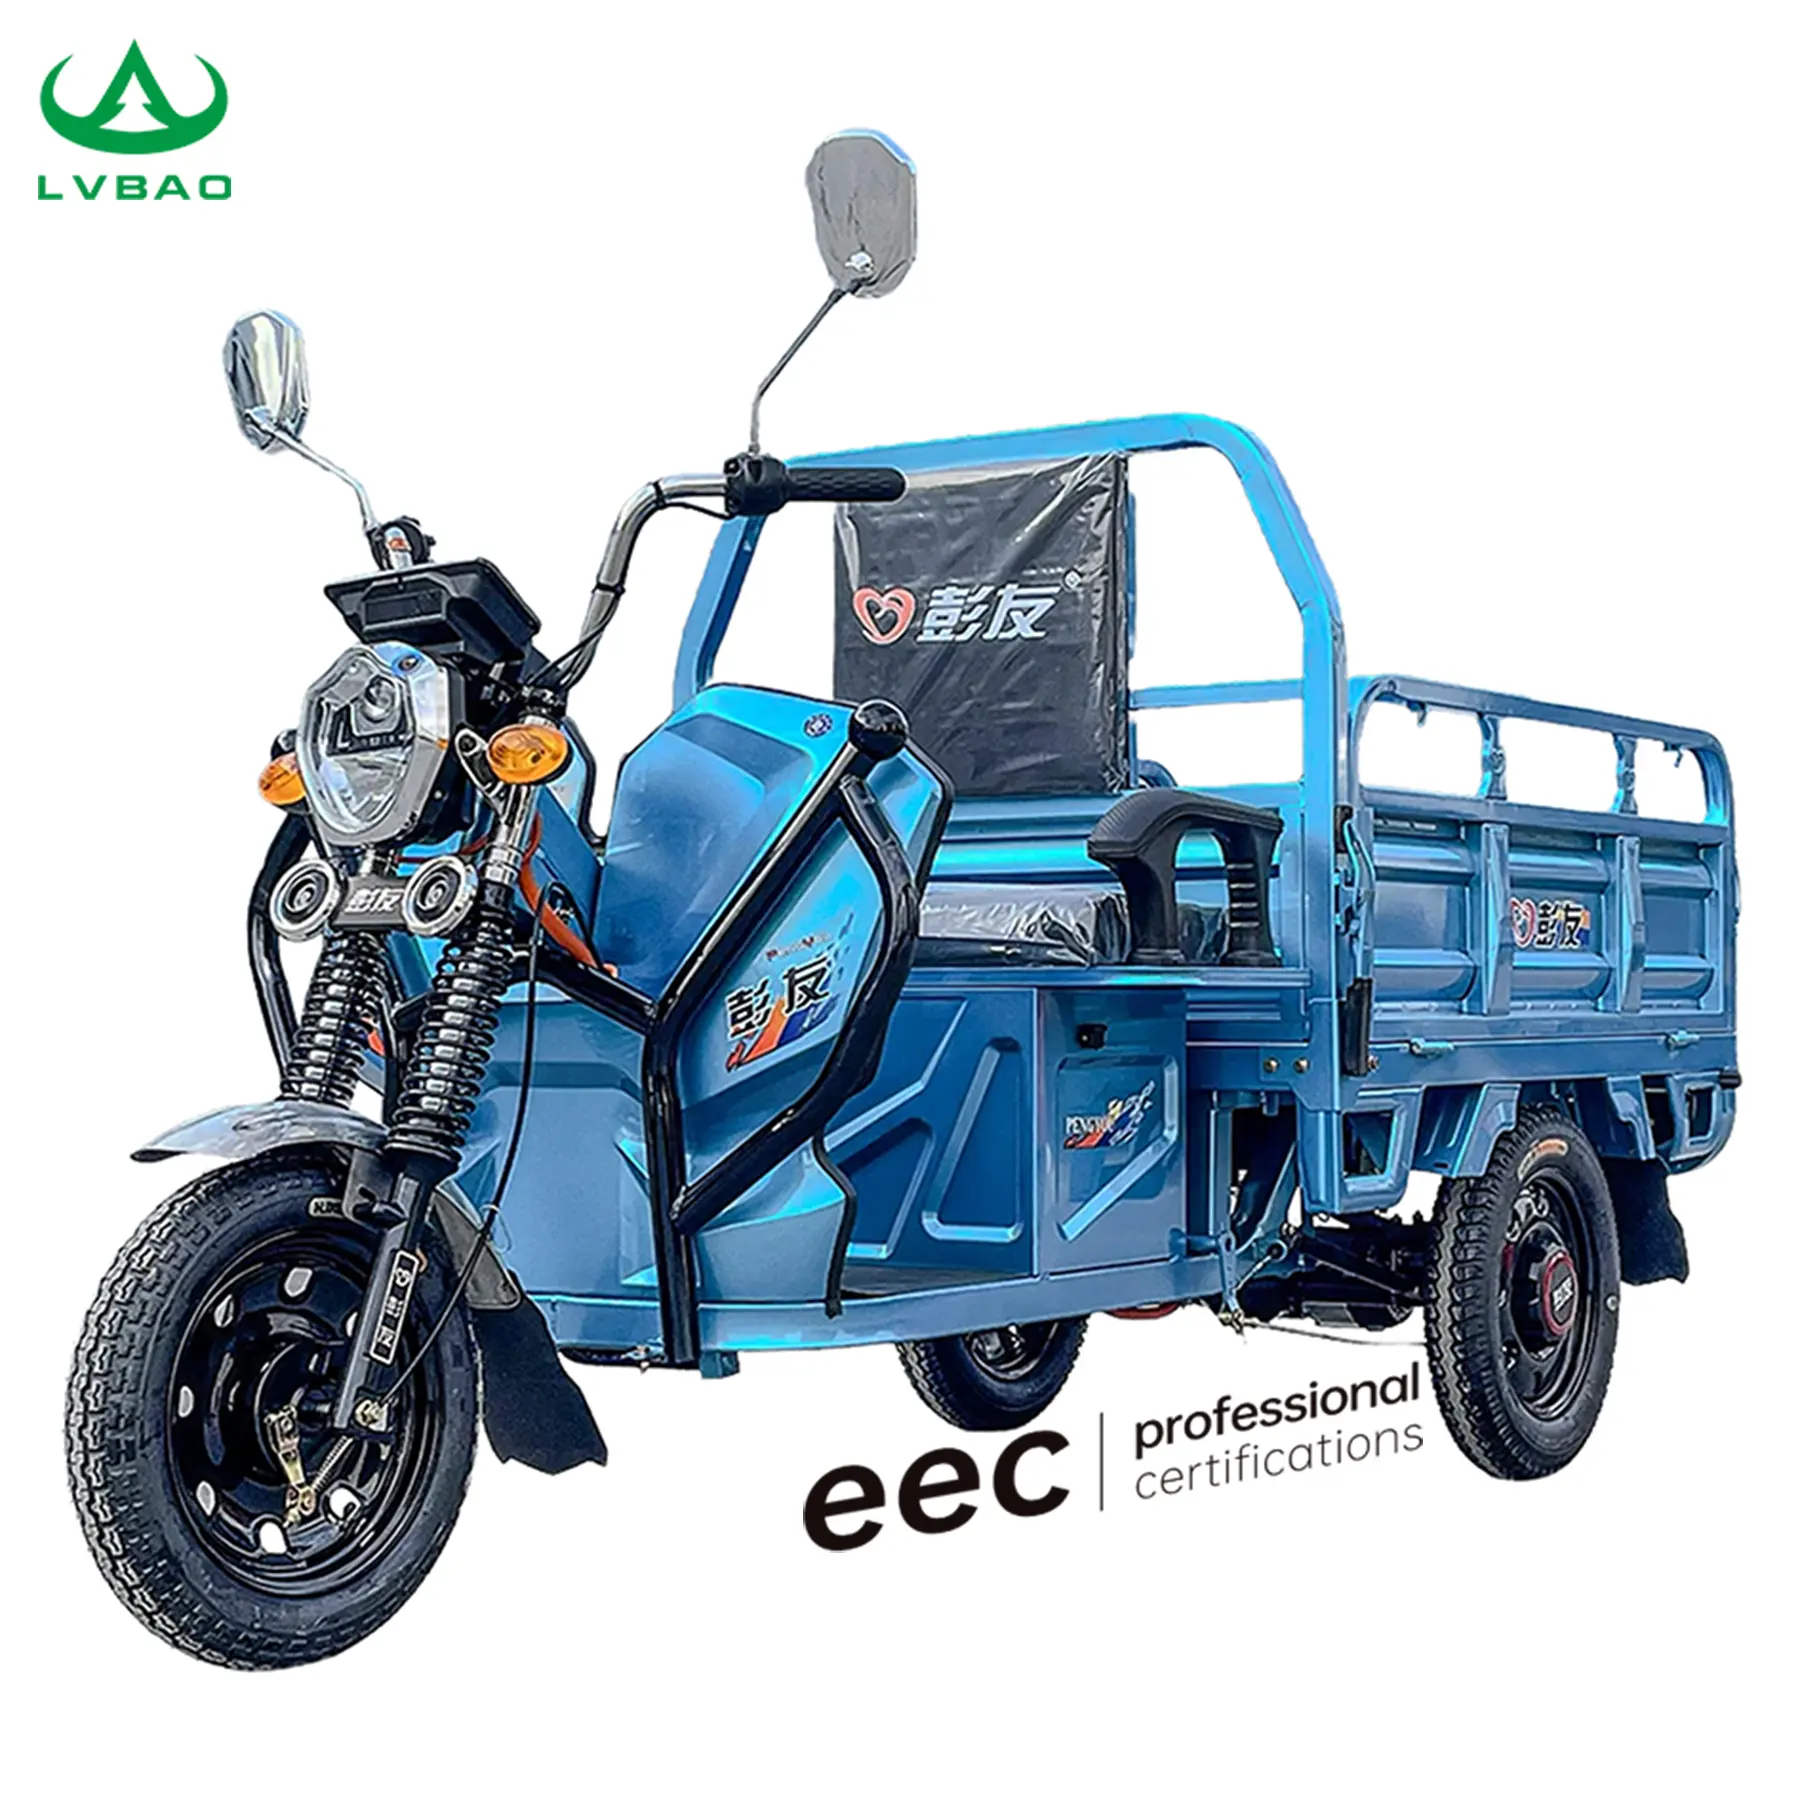 LB-LB130 качество Электрический Грузовой Трехколесный трехколесный мотоцикл EEC COC Европейская Омологация